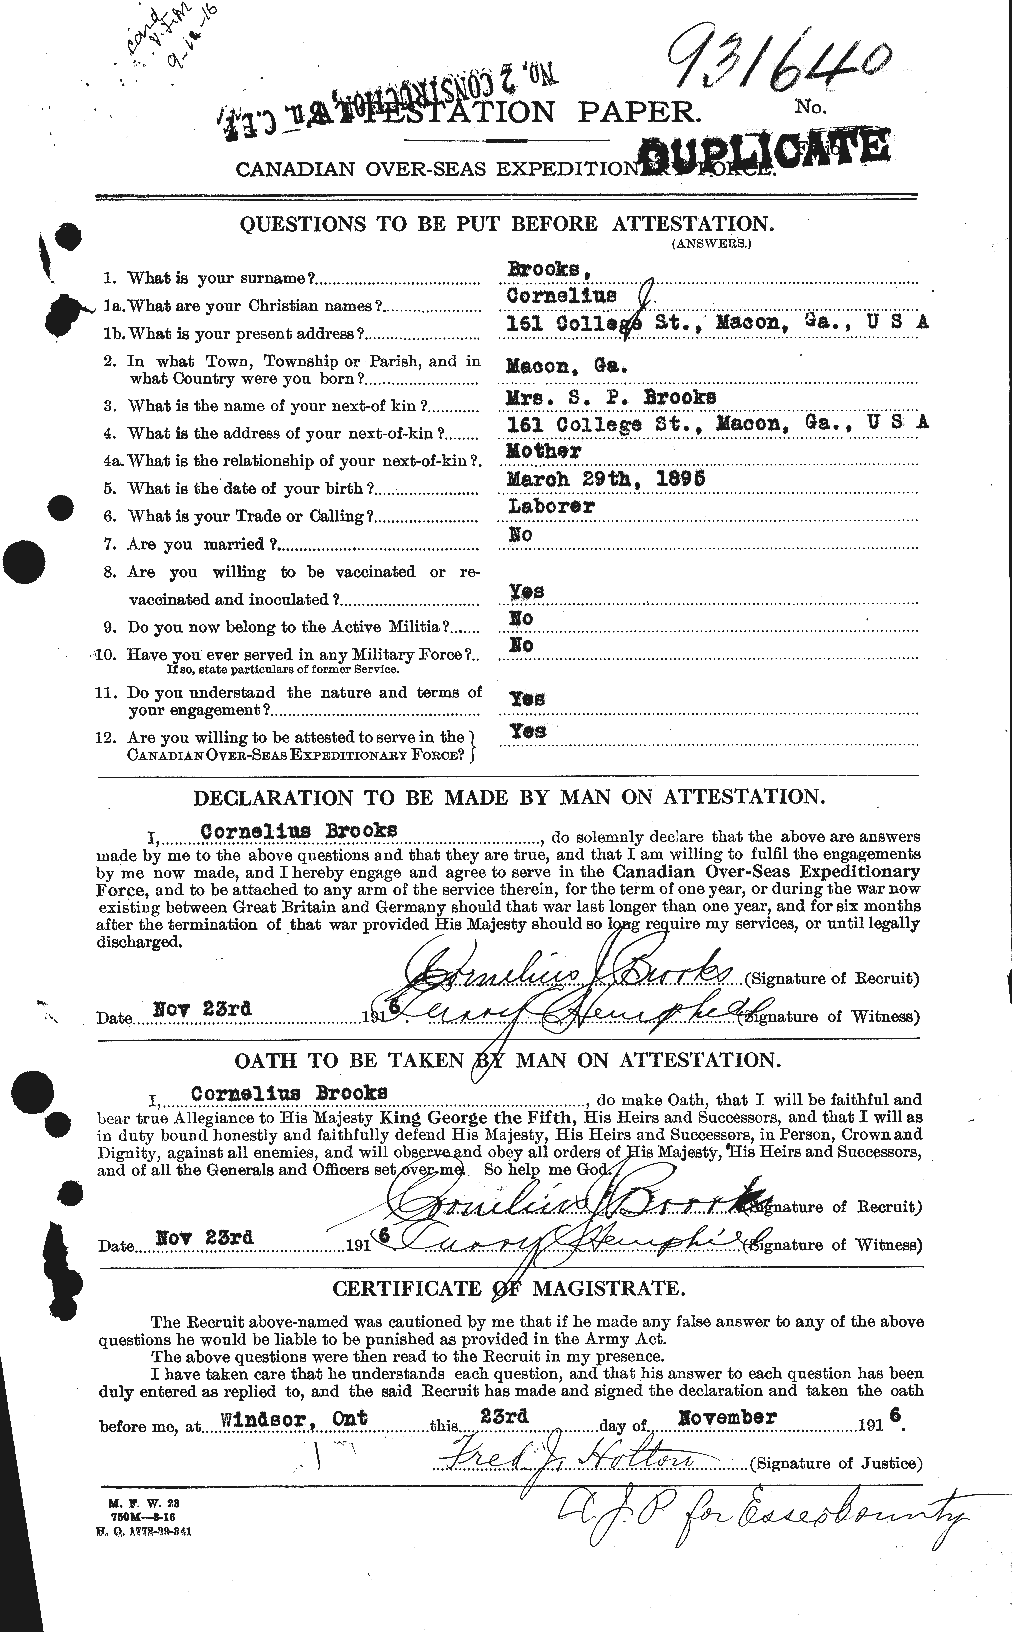 Dossiers du Personnel de la Première Guerre mondiale - CEC 261548a